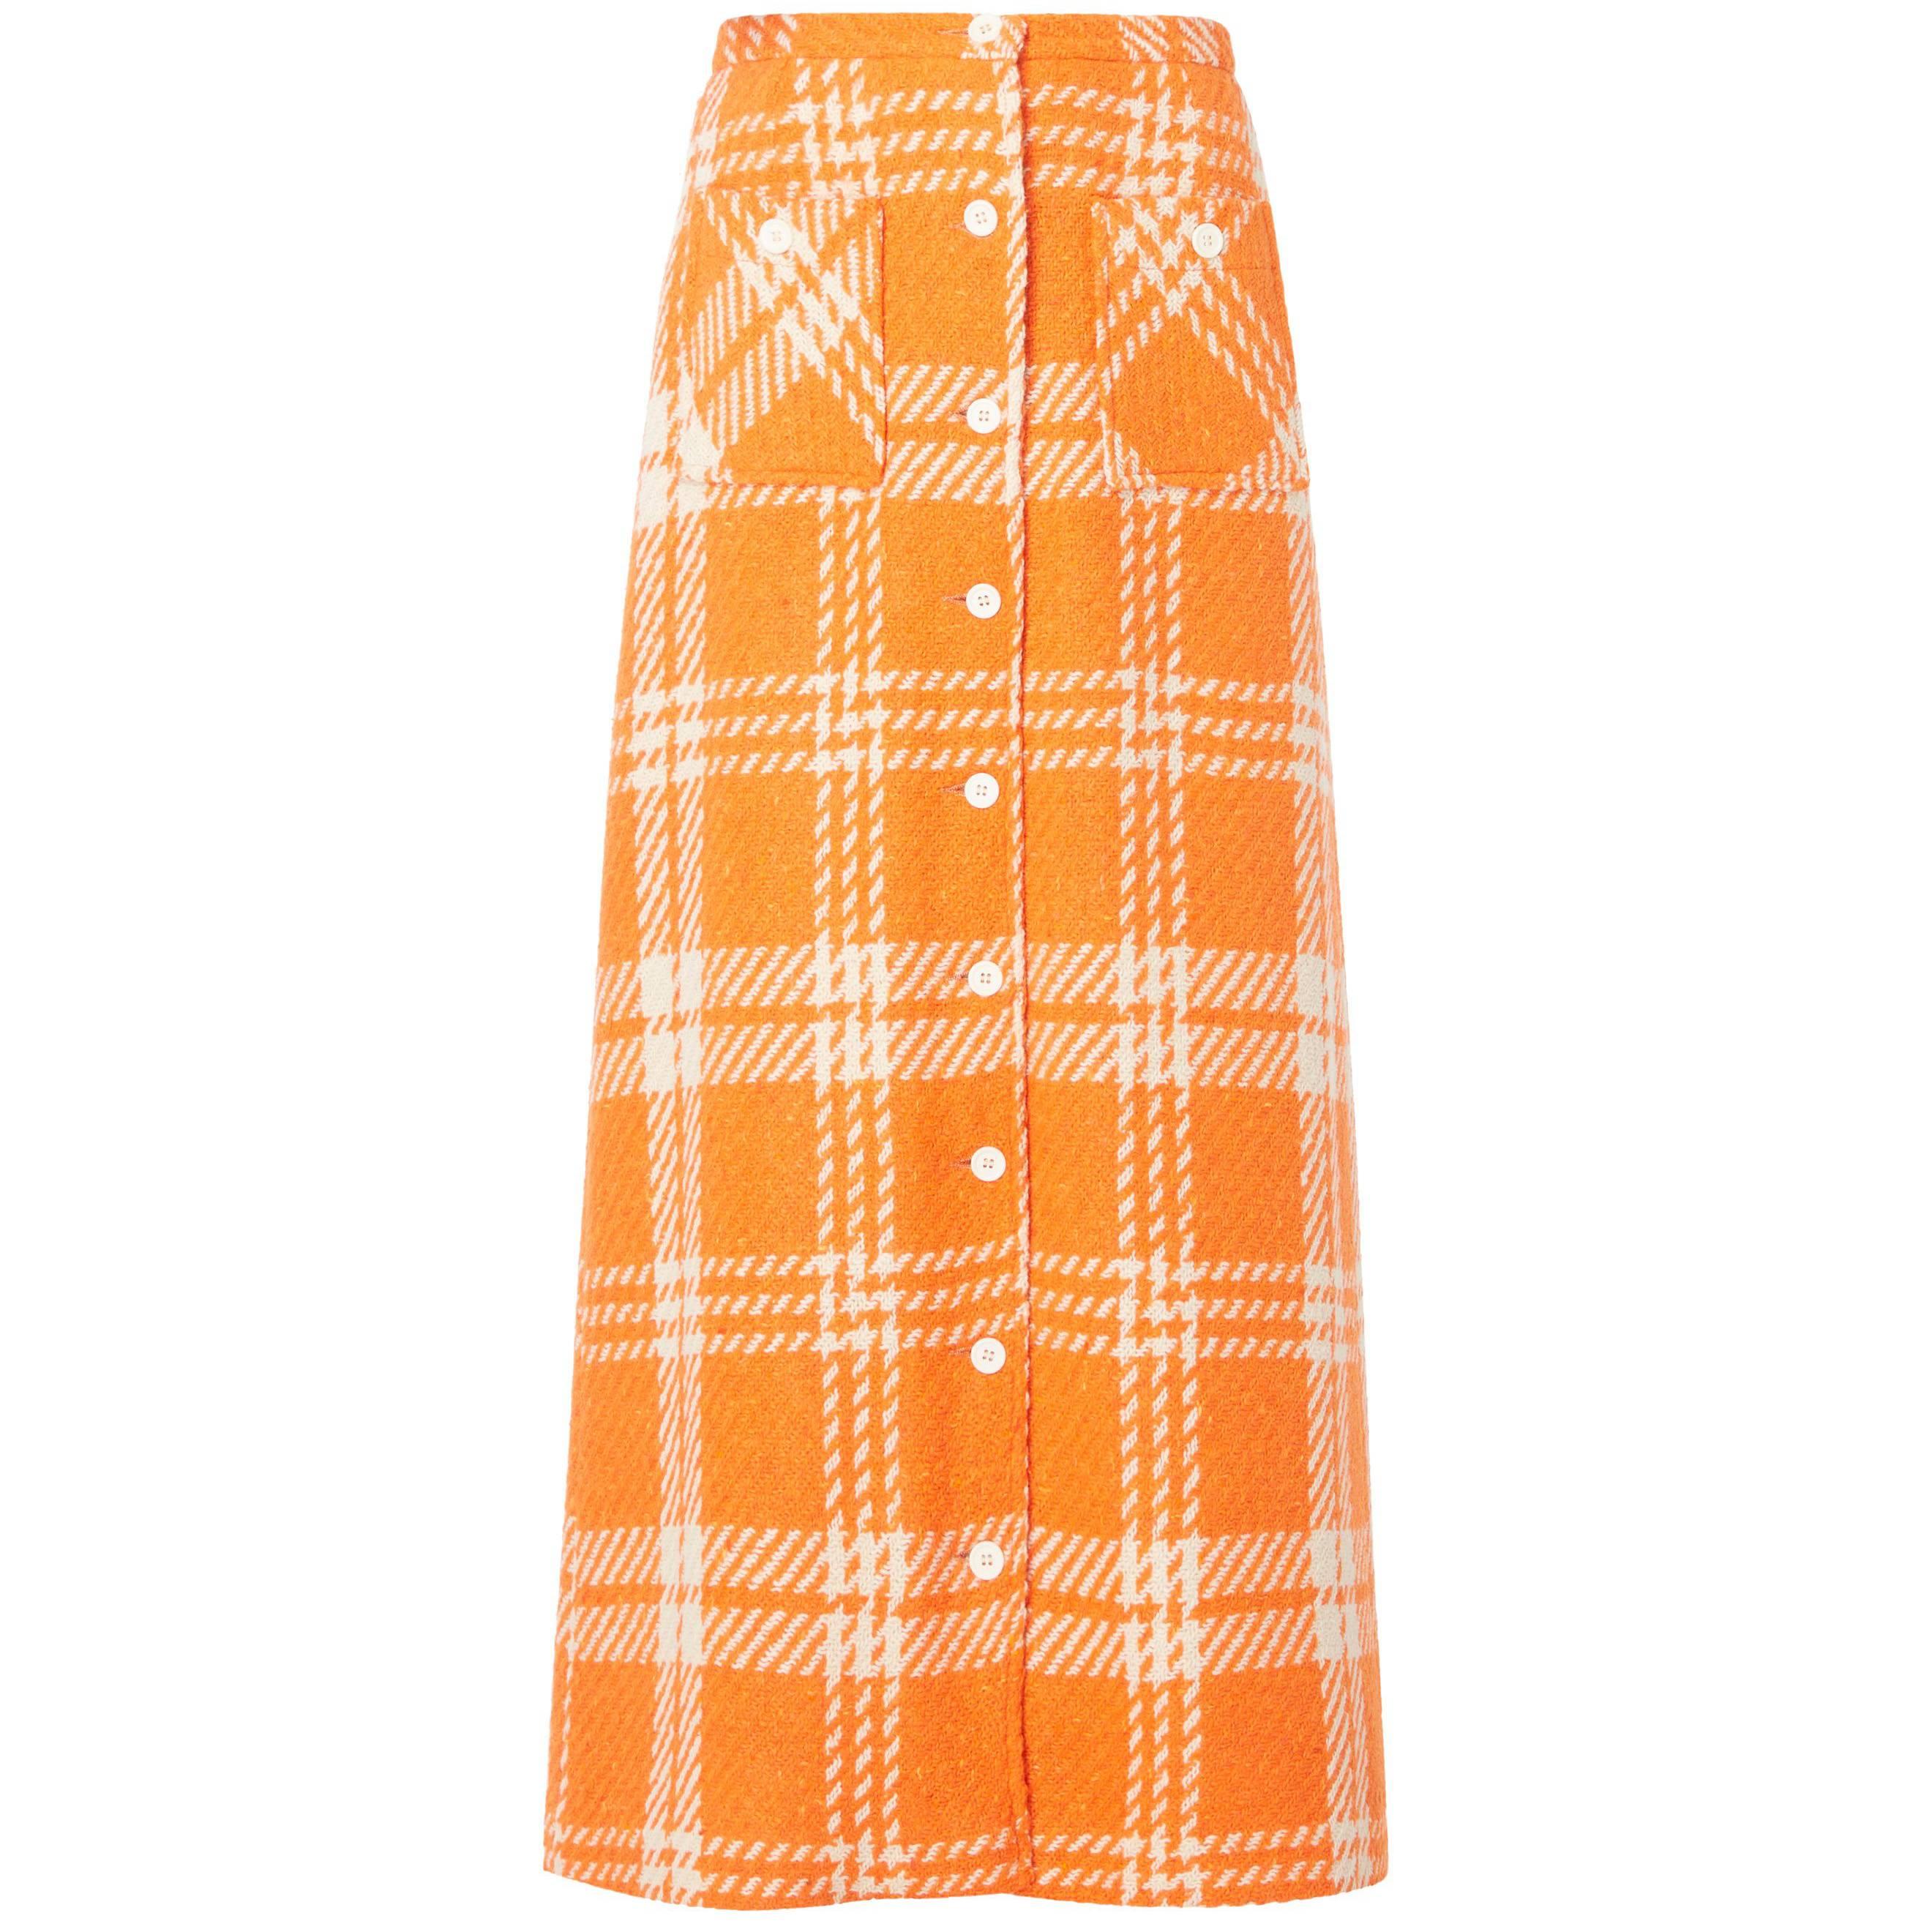 Great Unknown orange houndstooth skirt, circa 1965